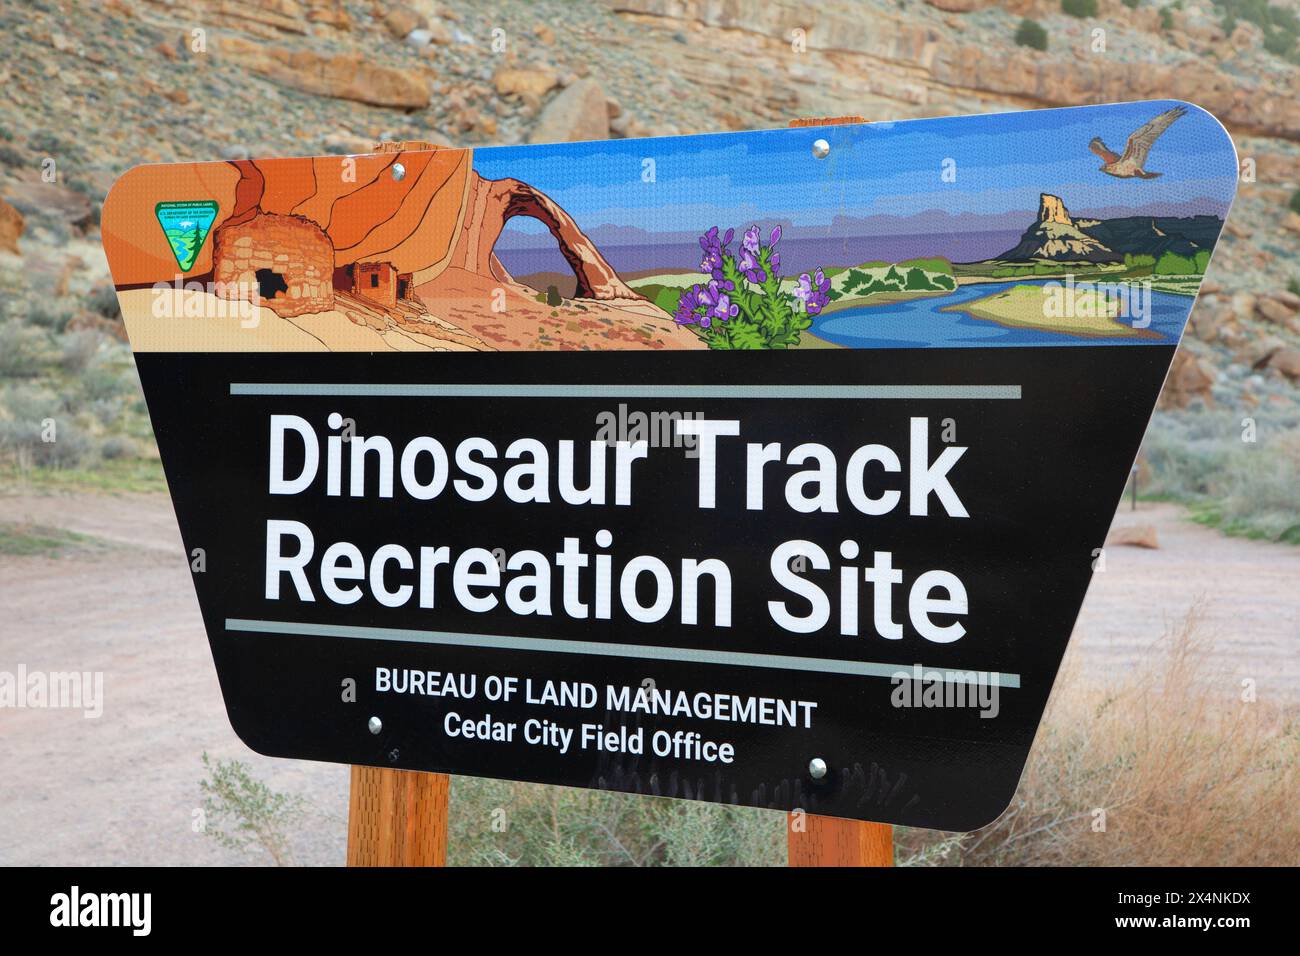 Panneau d'entrée, Dinosaur Track Recreation site, Cedar City Bureau of Land Management, Utah Banque D'Images